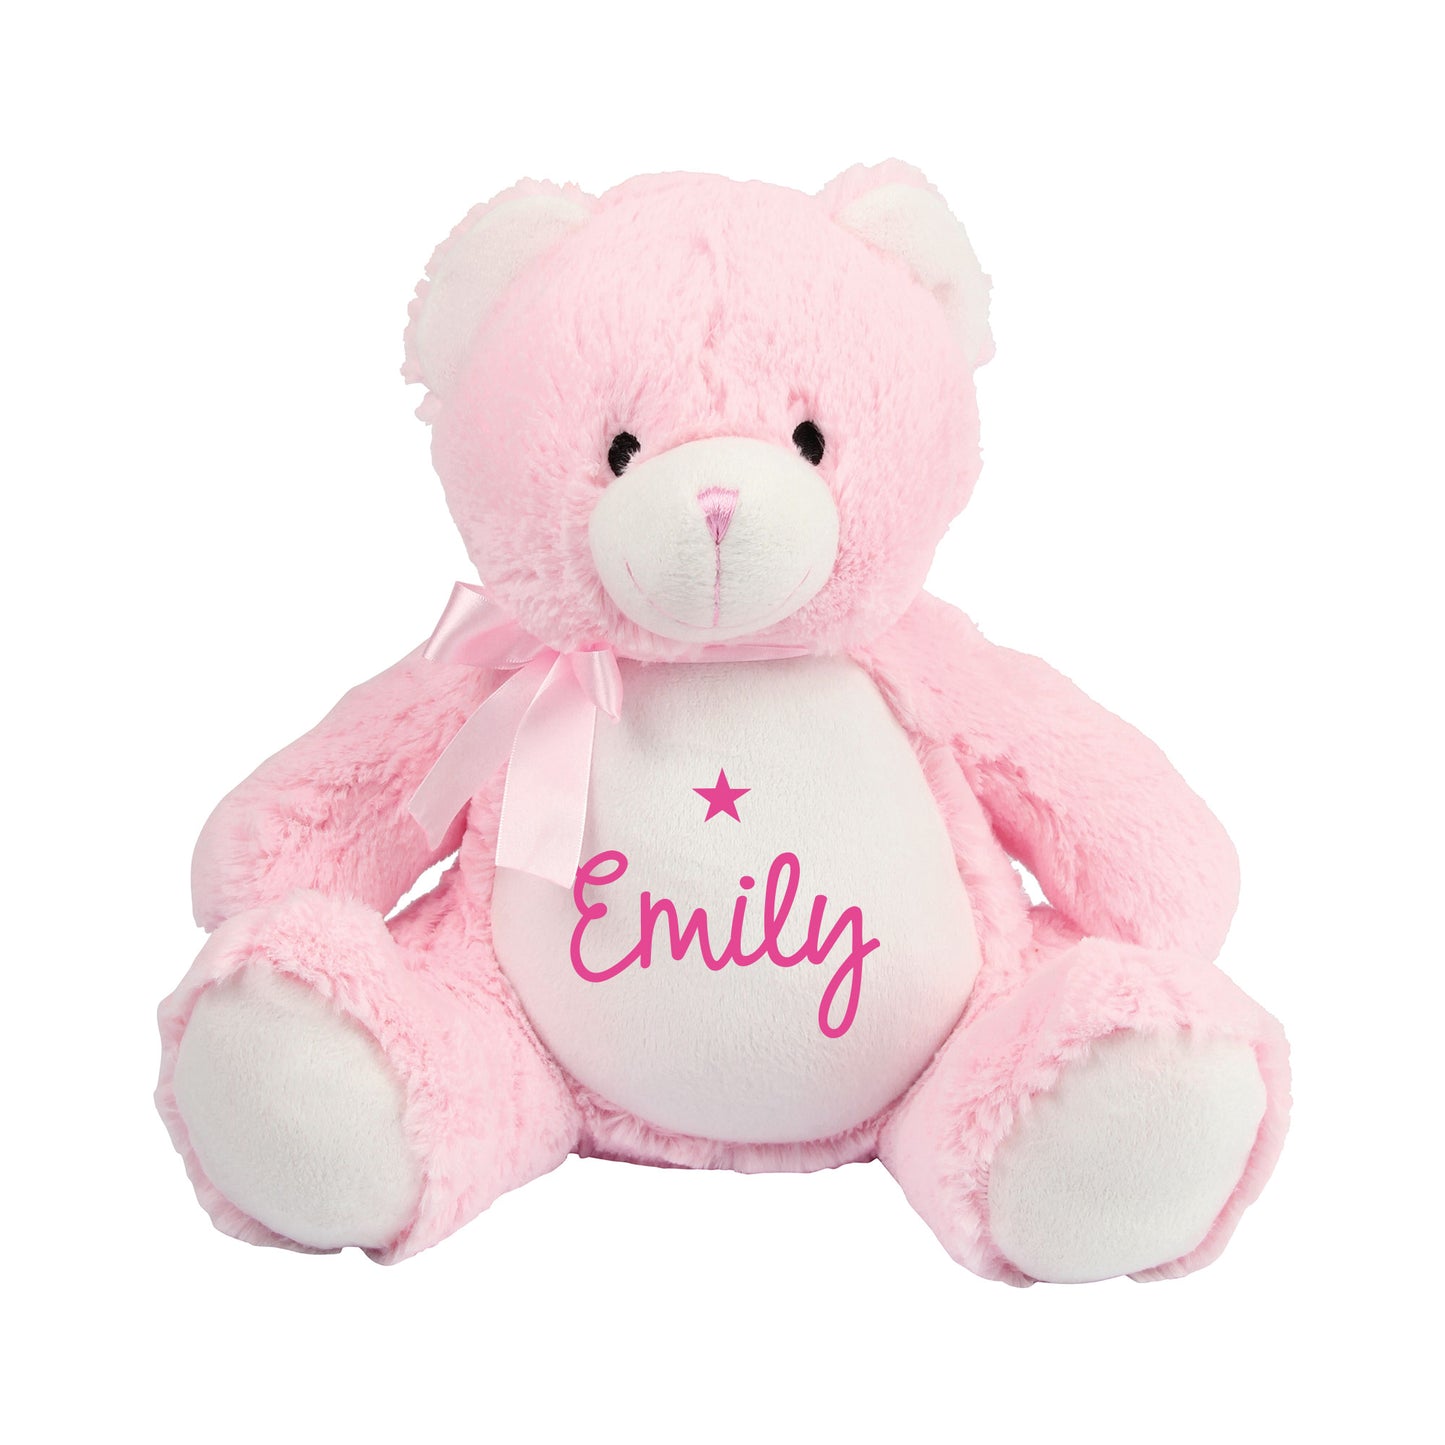 Personalised Pink Teddy